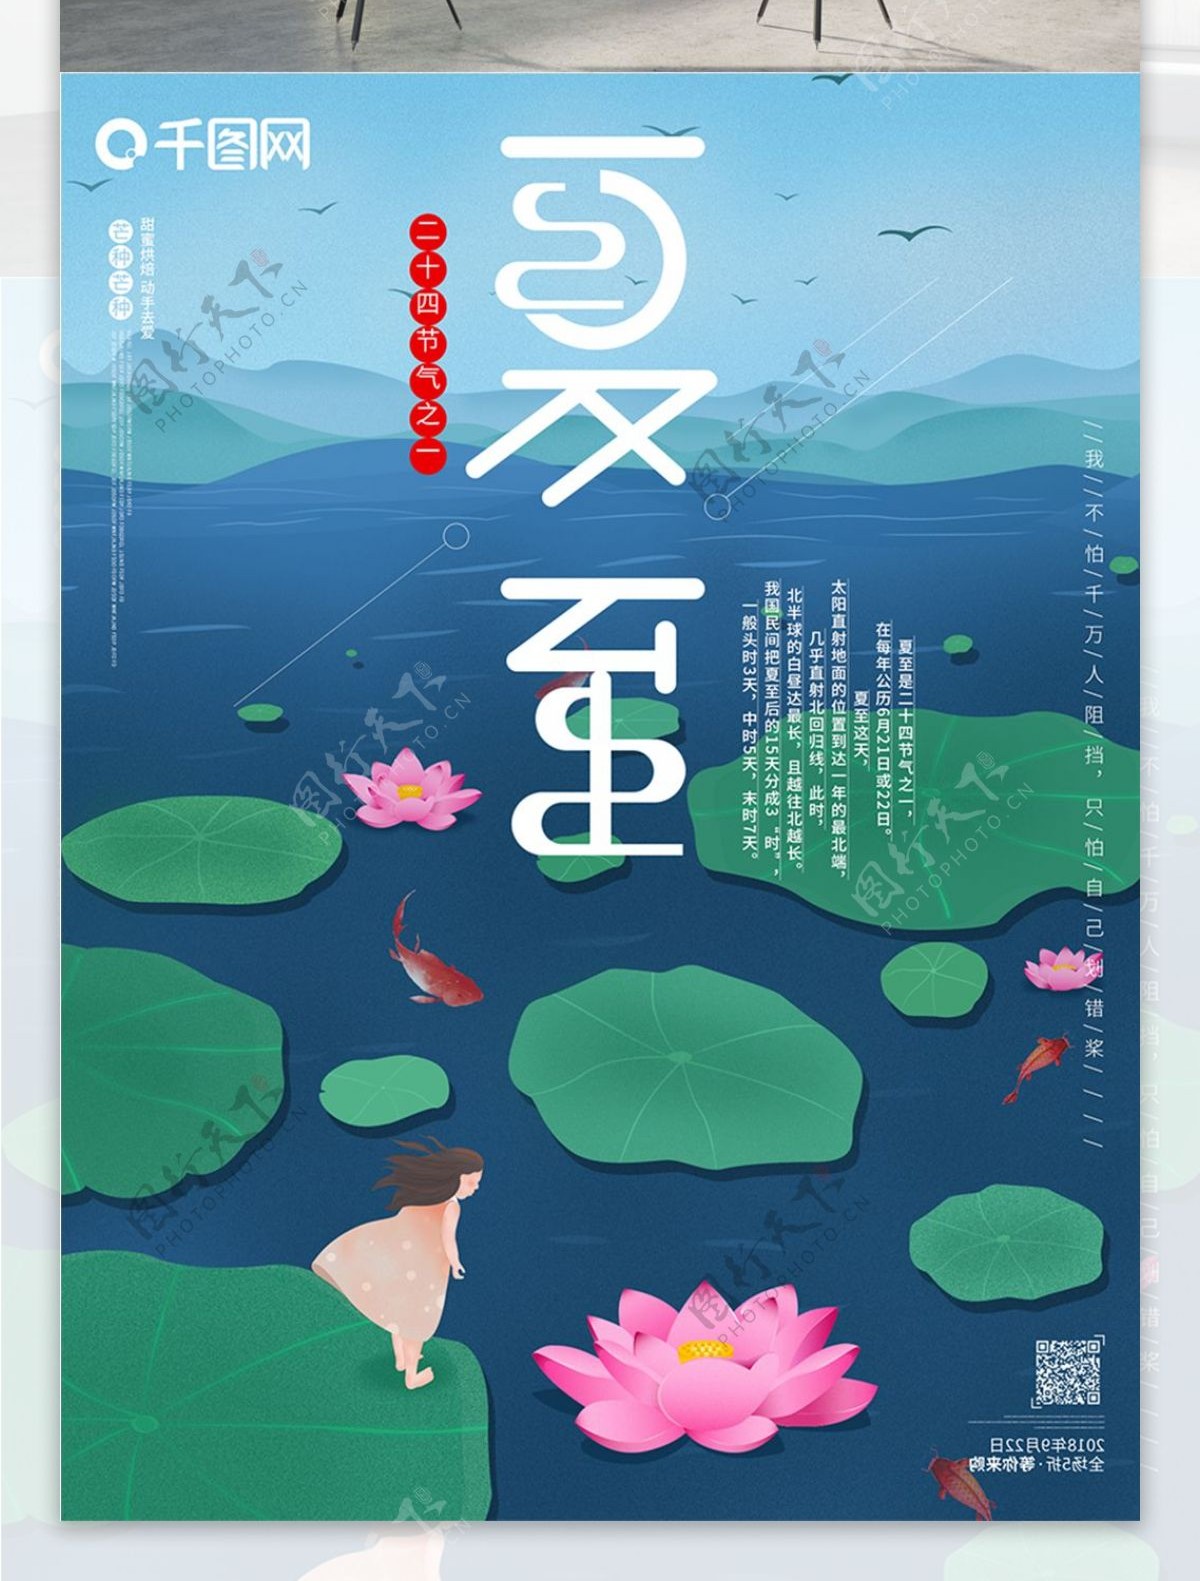 夏至立夏24节气之一中国传统节日原创海报